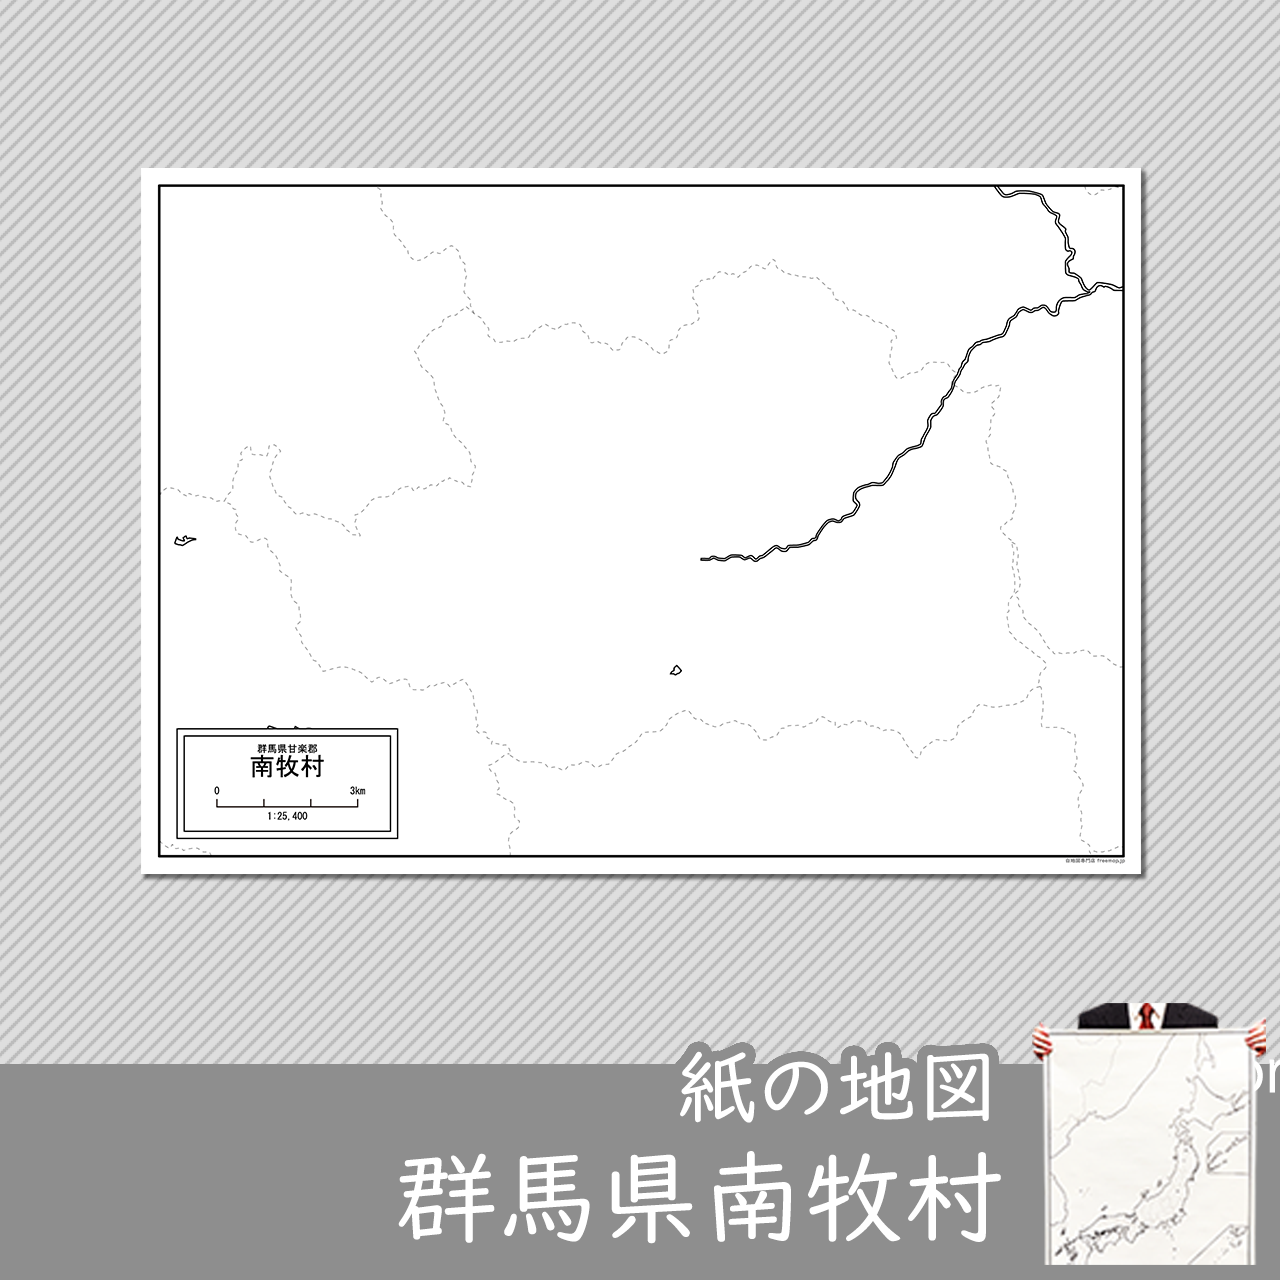 南牧村の紙の白地図のサムネイル